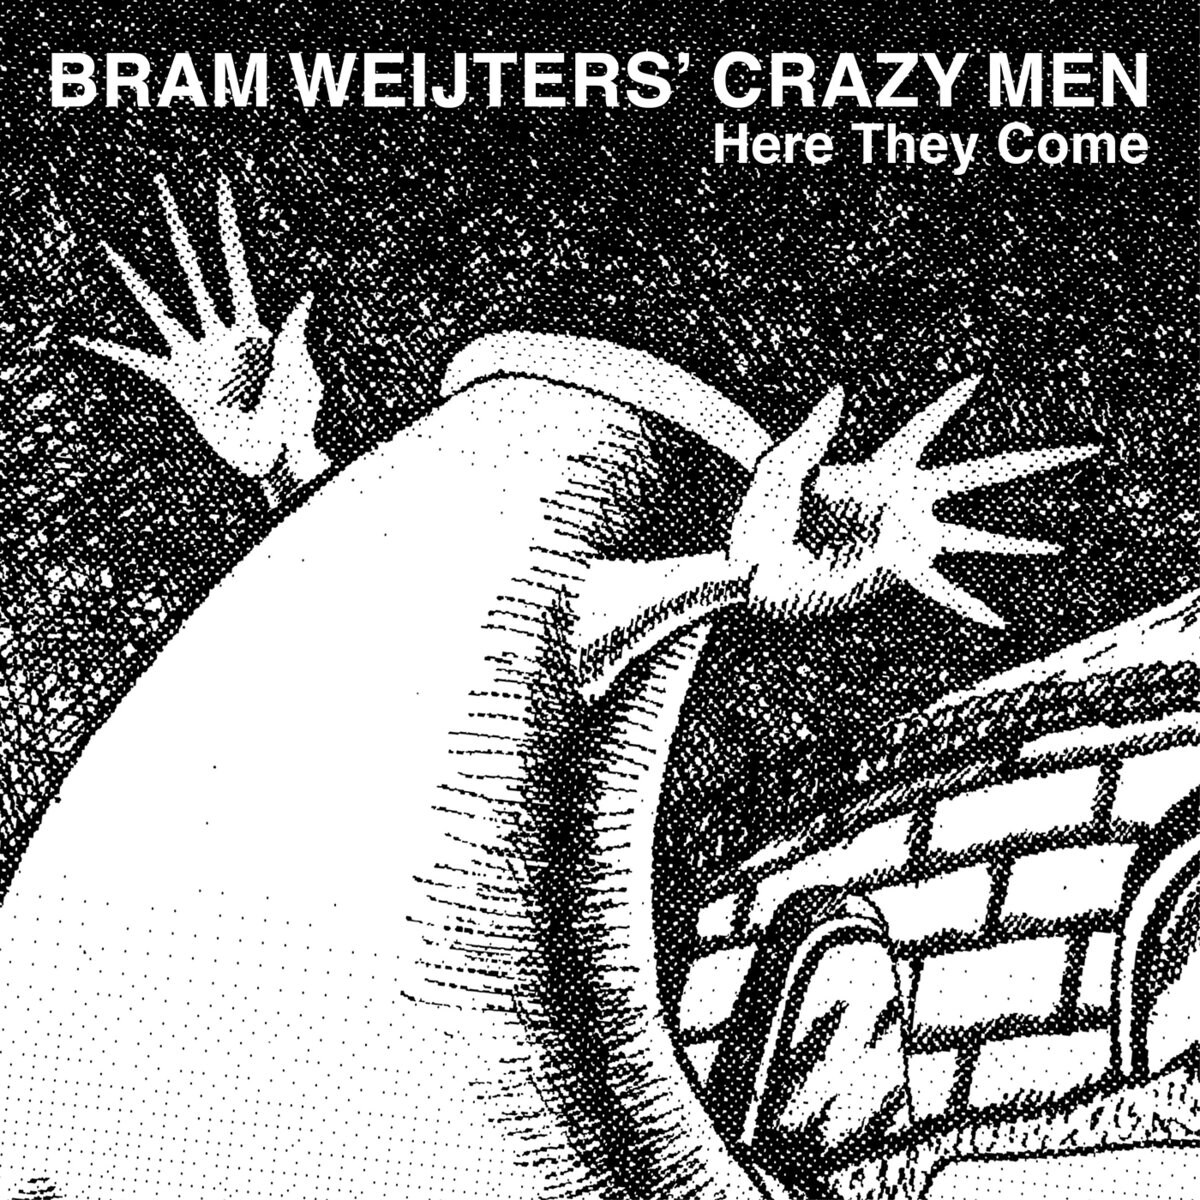 1. Bram Weijters’ Crazy Men - Here They Come